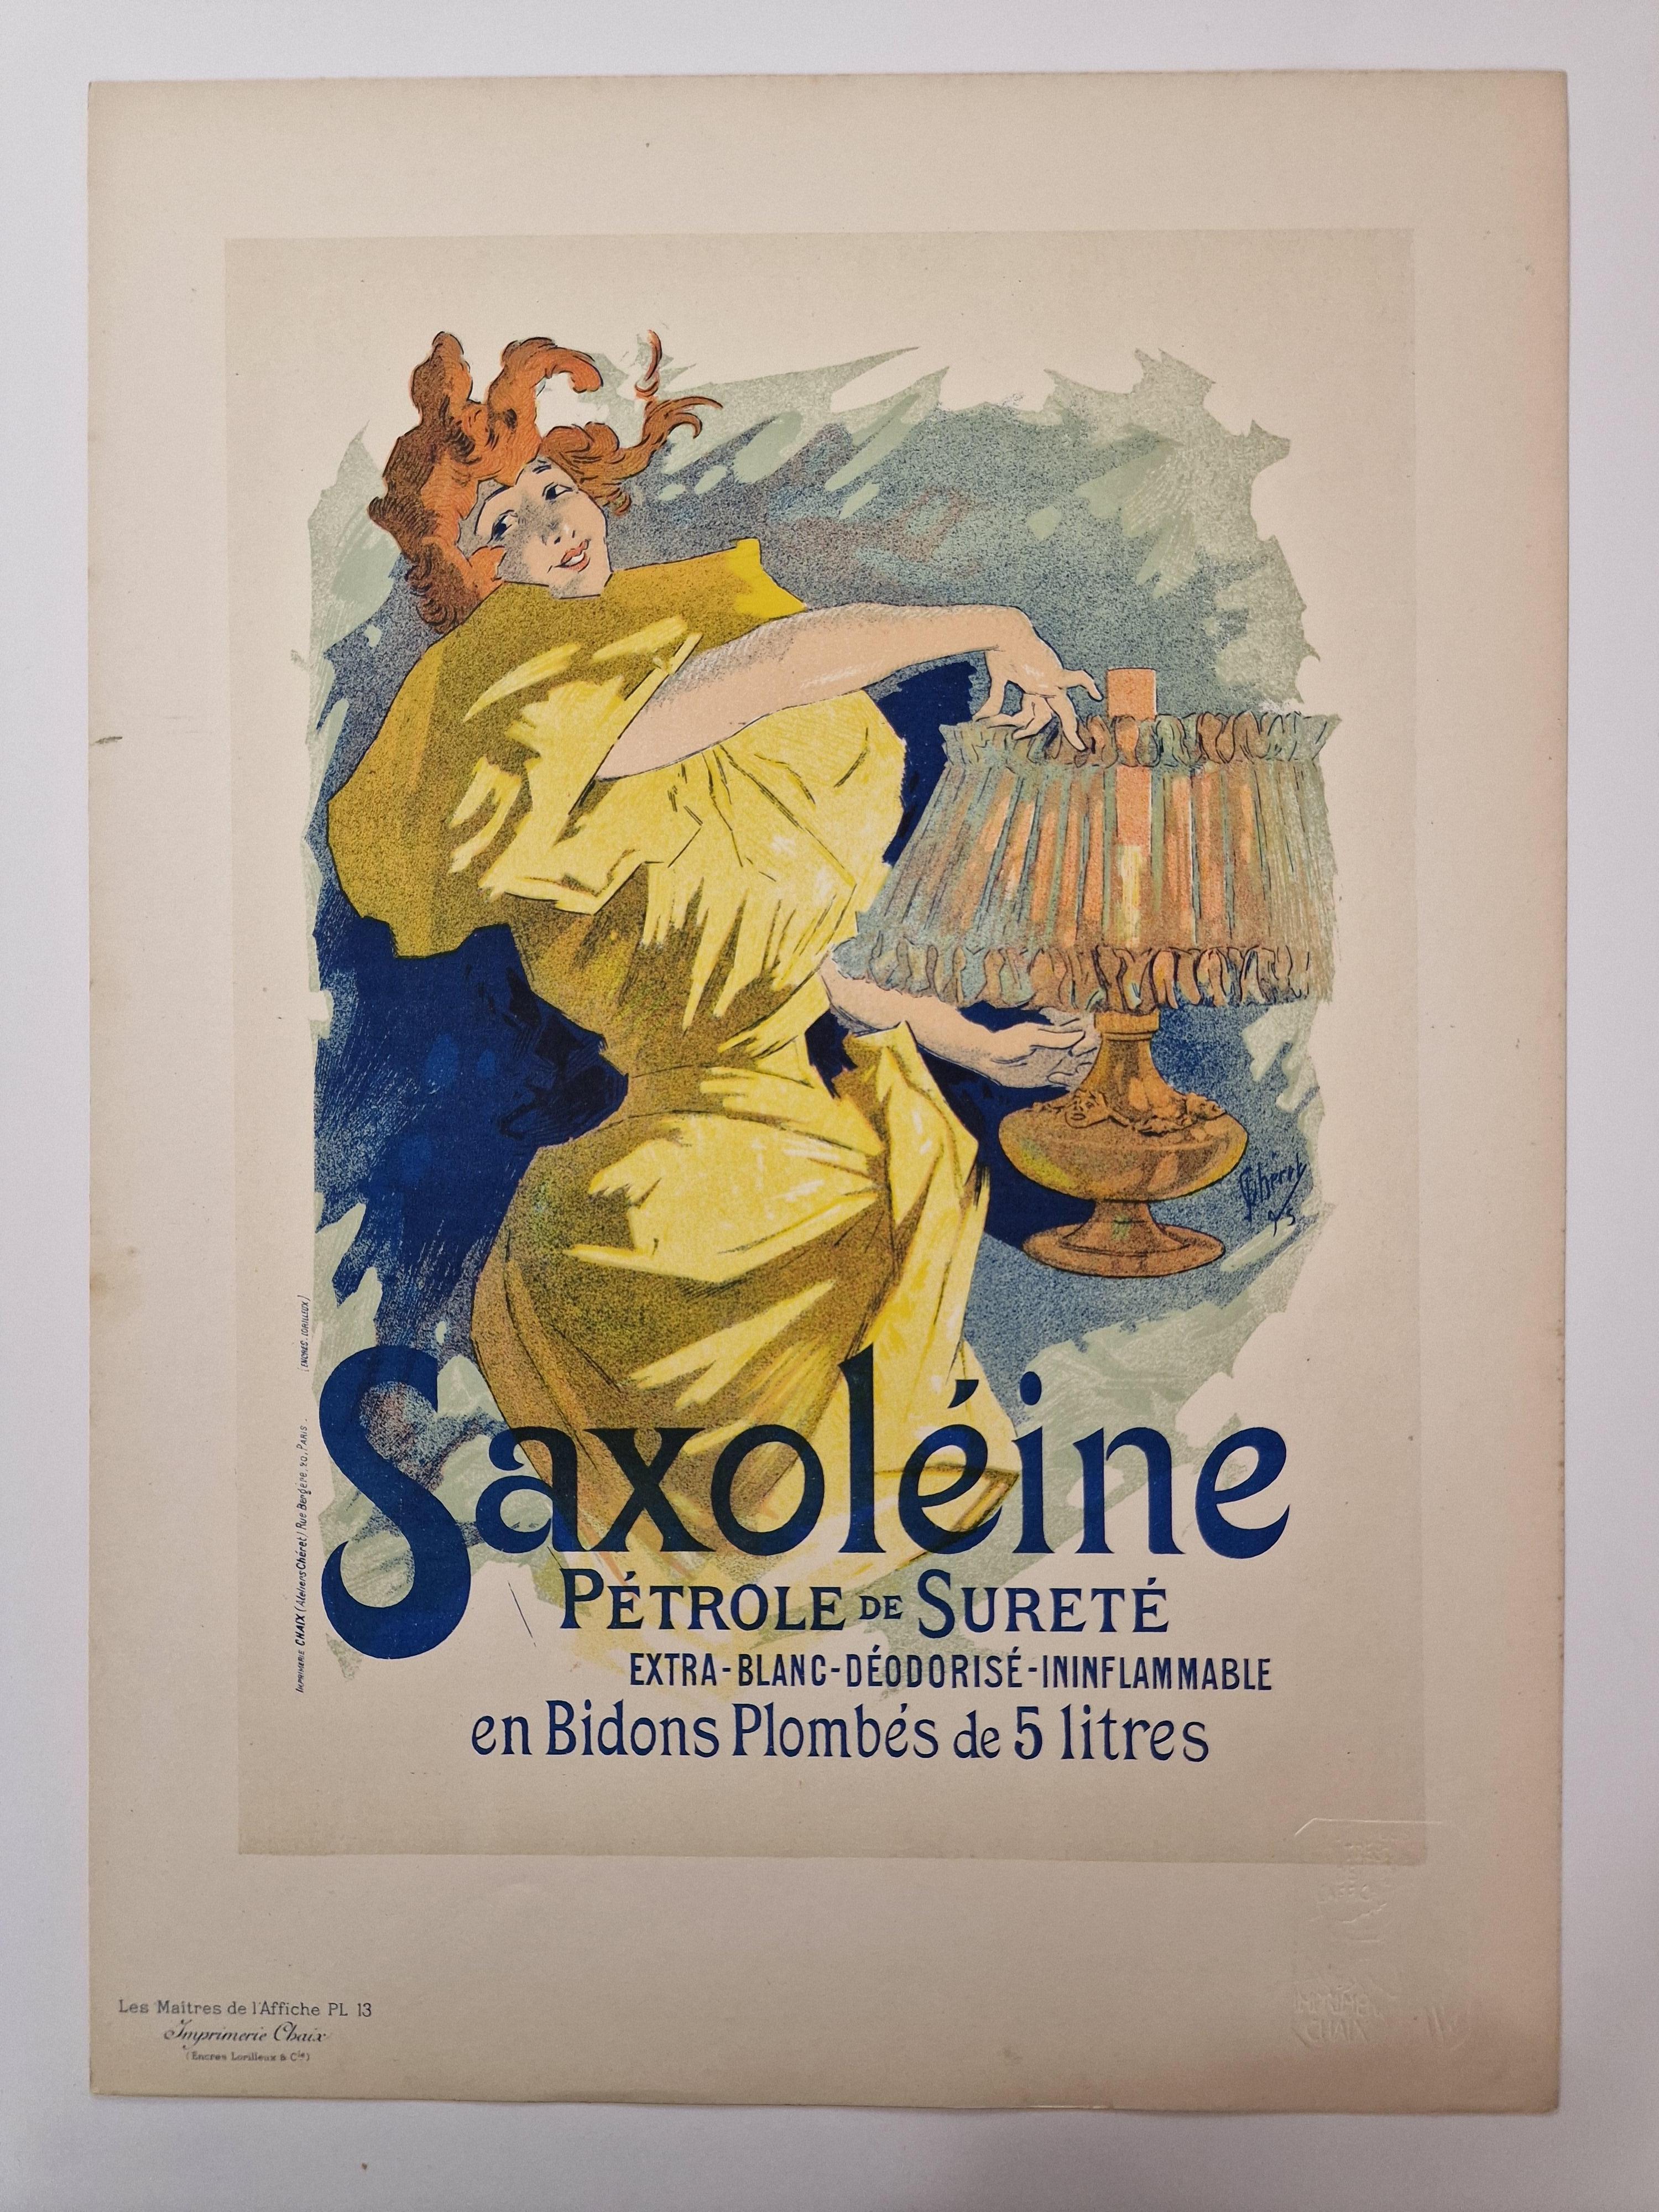 Saxoléine - Print by Jules Chéret